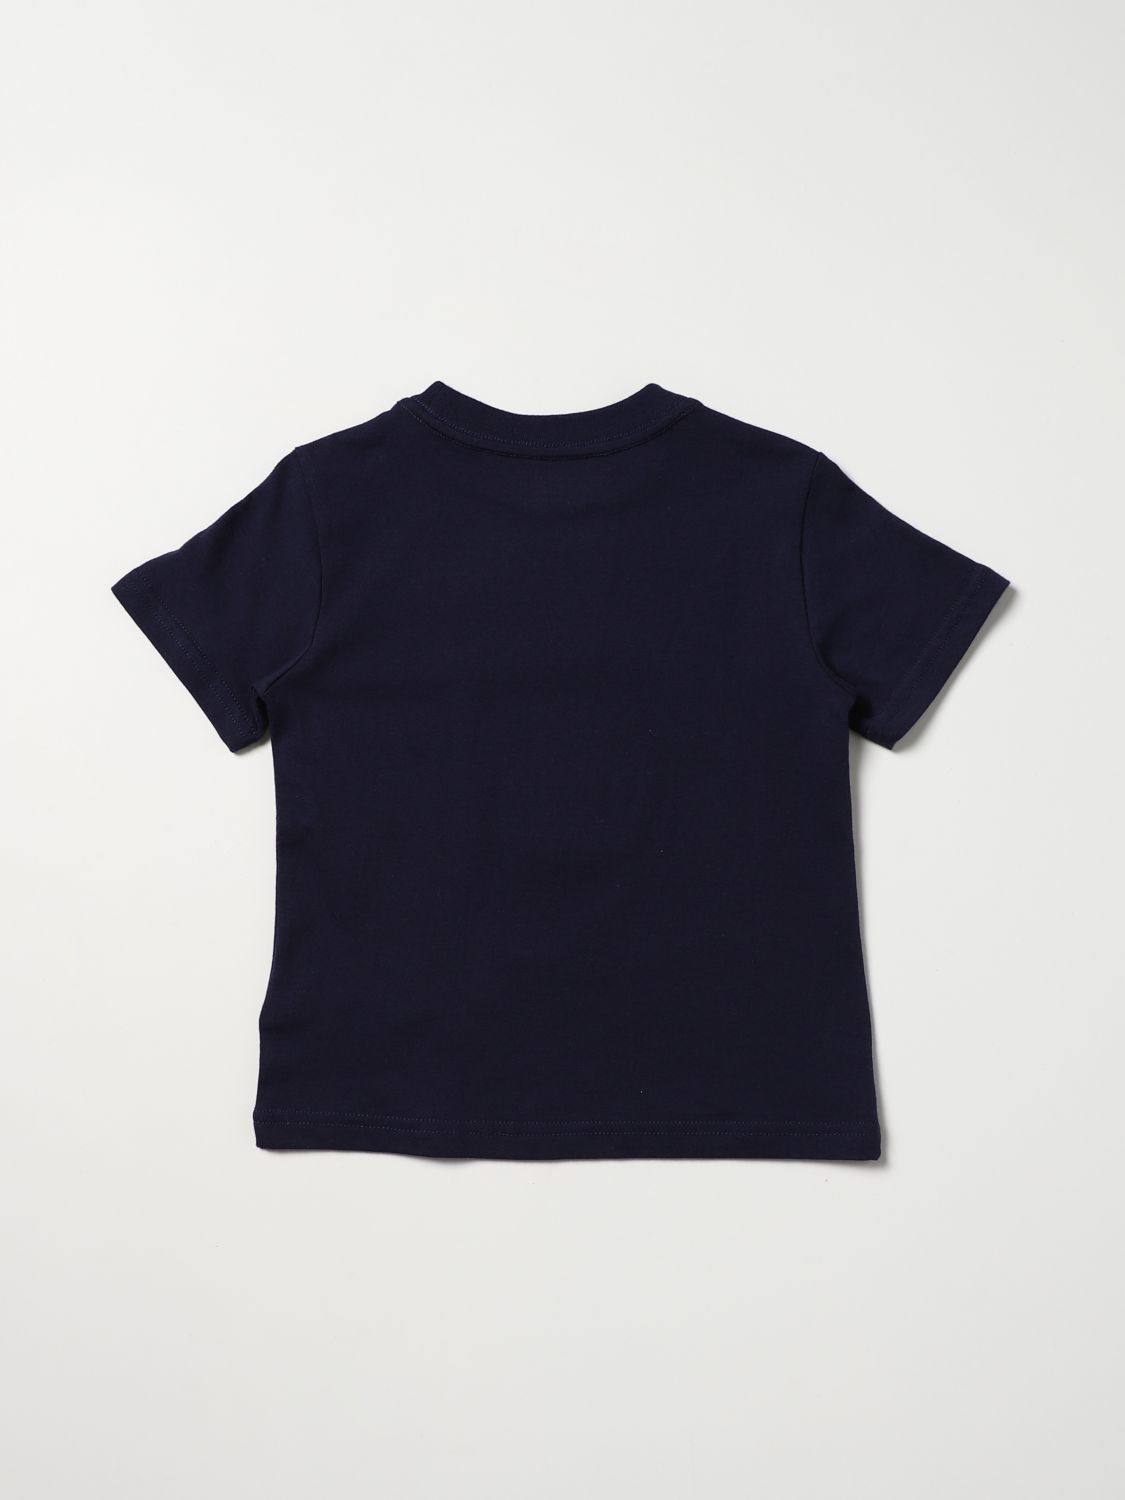 Tシャツ ポロラルフローレン: Tシャツ Polo Ralph Lauren 男の子 ネイビー 2